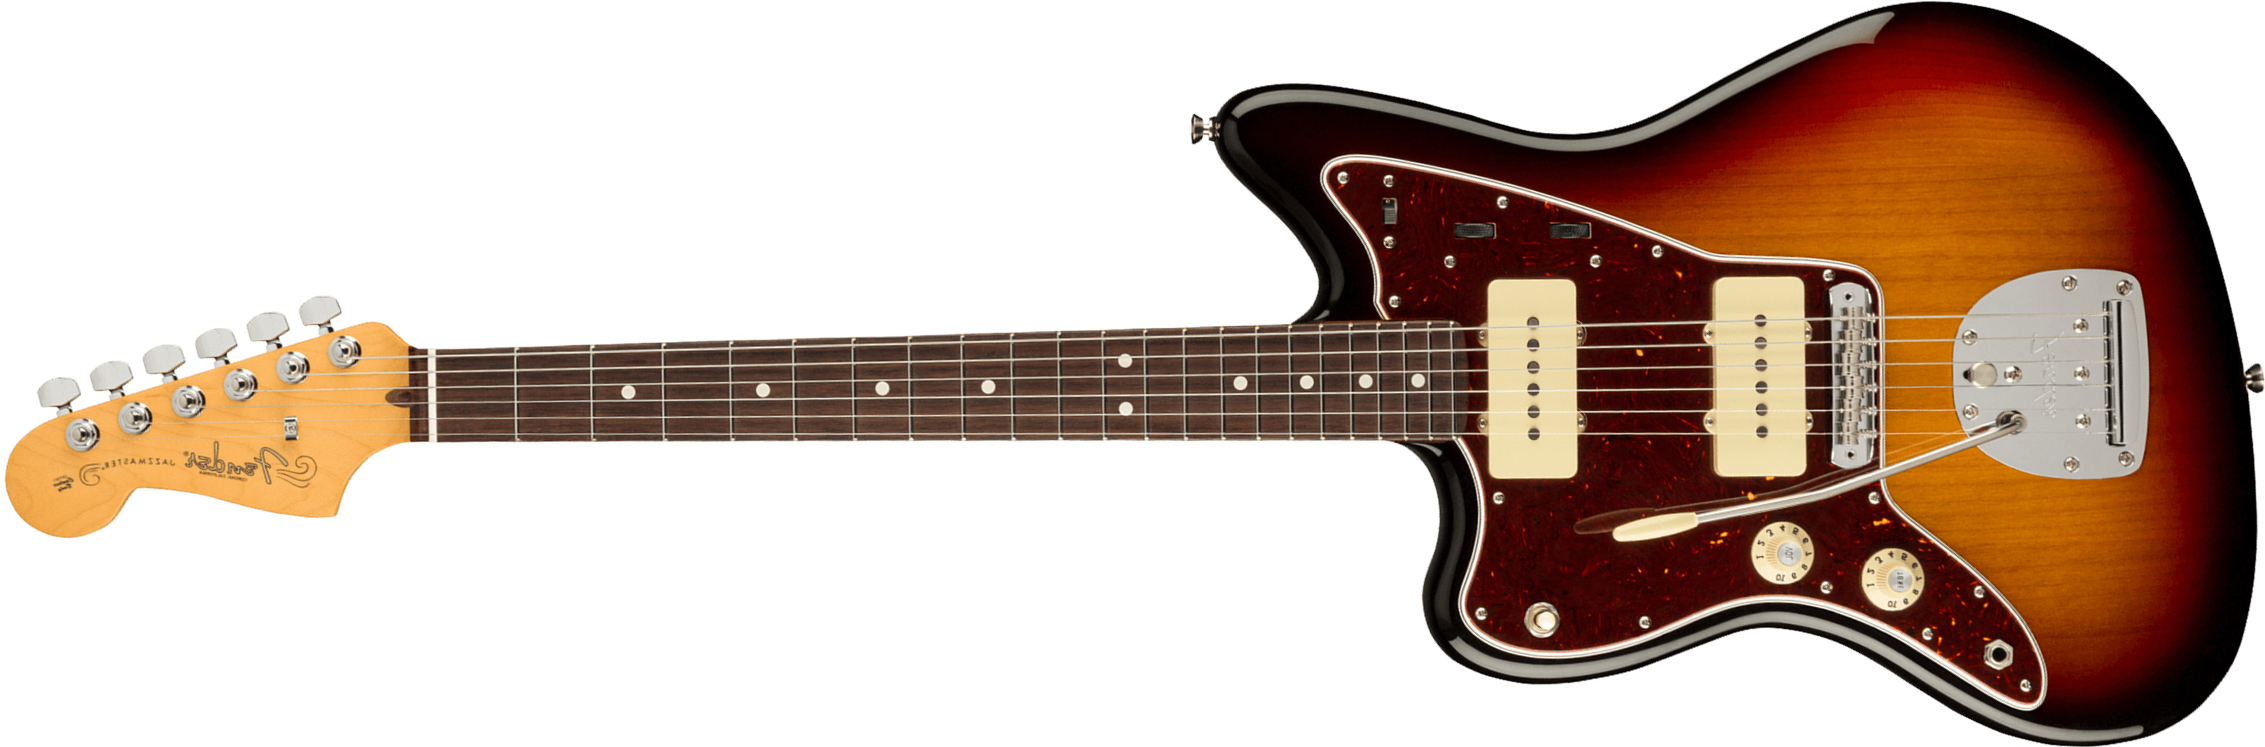 Fender Jazzmaster American Professional Ii Lh Gaucher Usa Rw - 3-color Sunburst - Linkshandige elektrische gitaar - Main picture